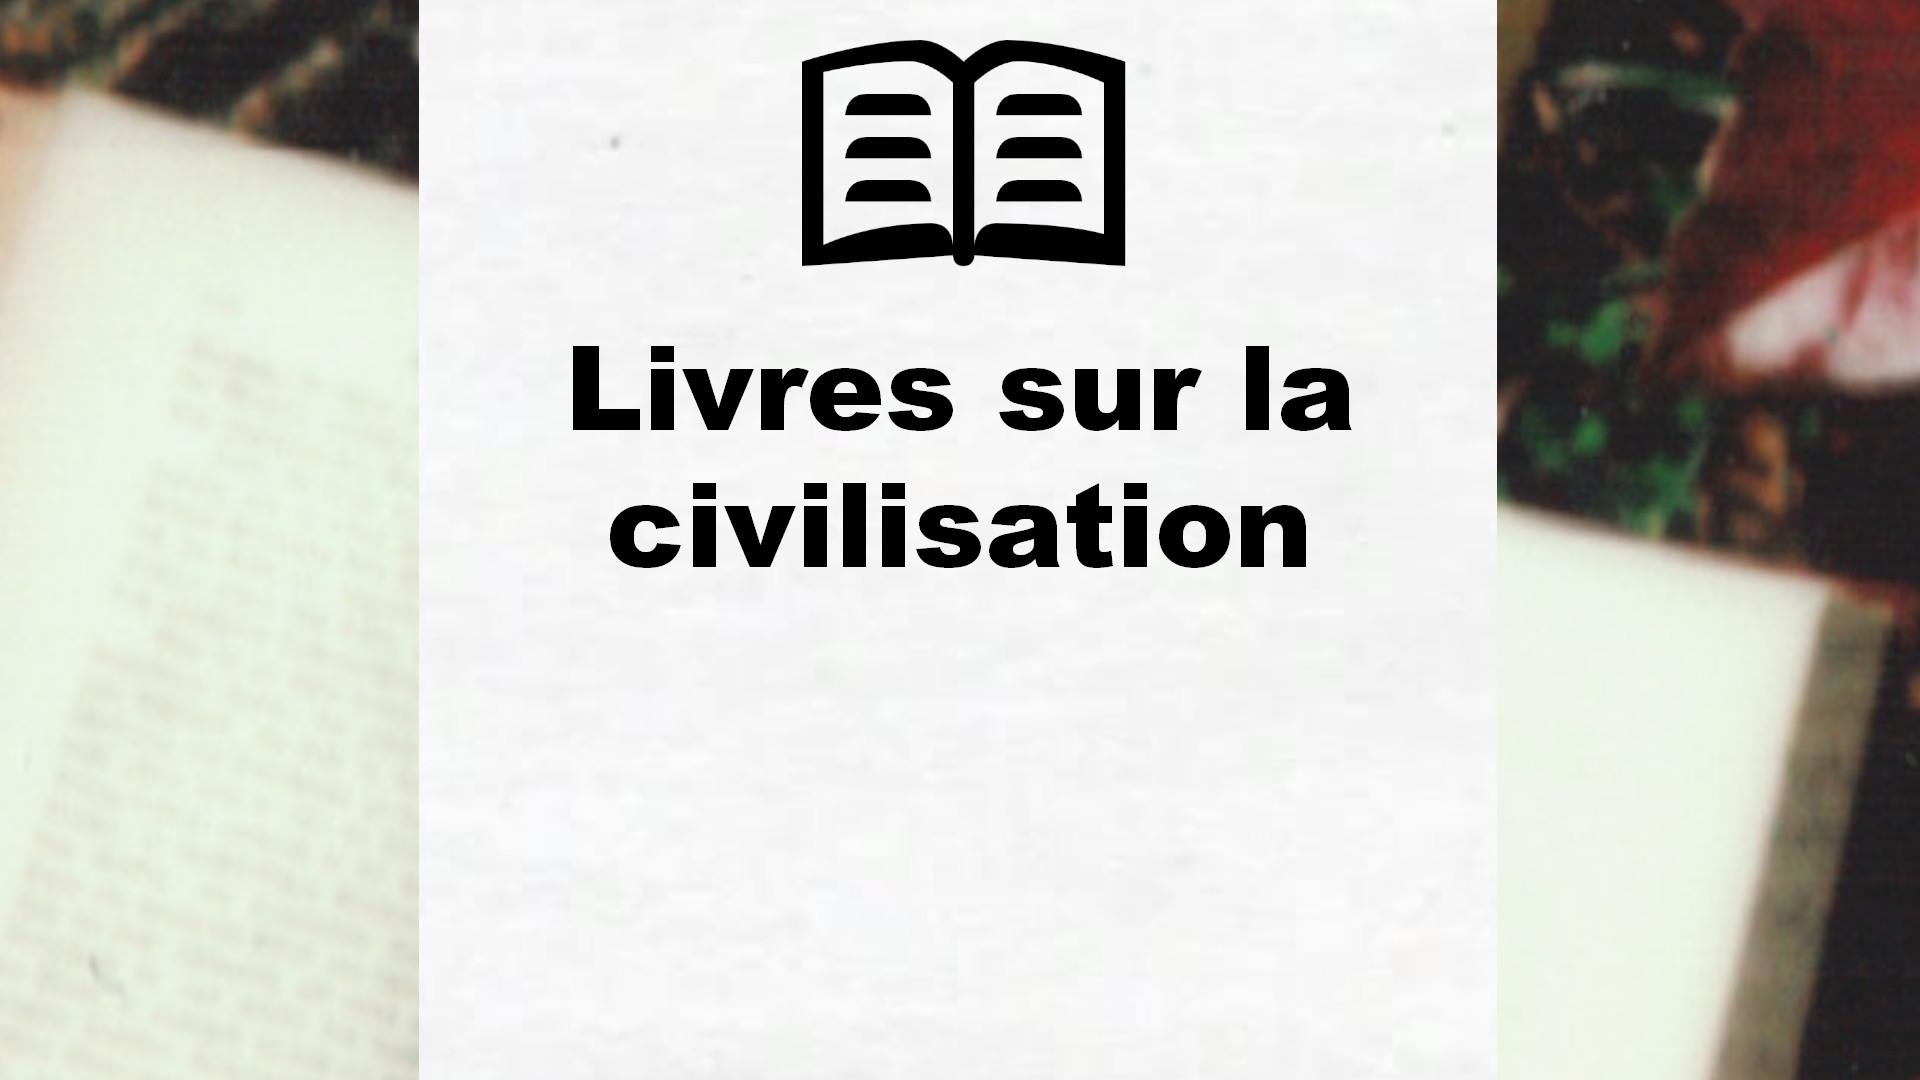 Livres sur la civilisation